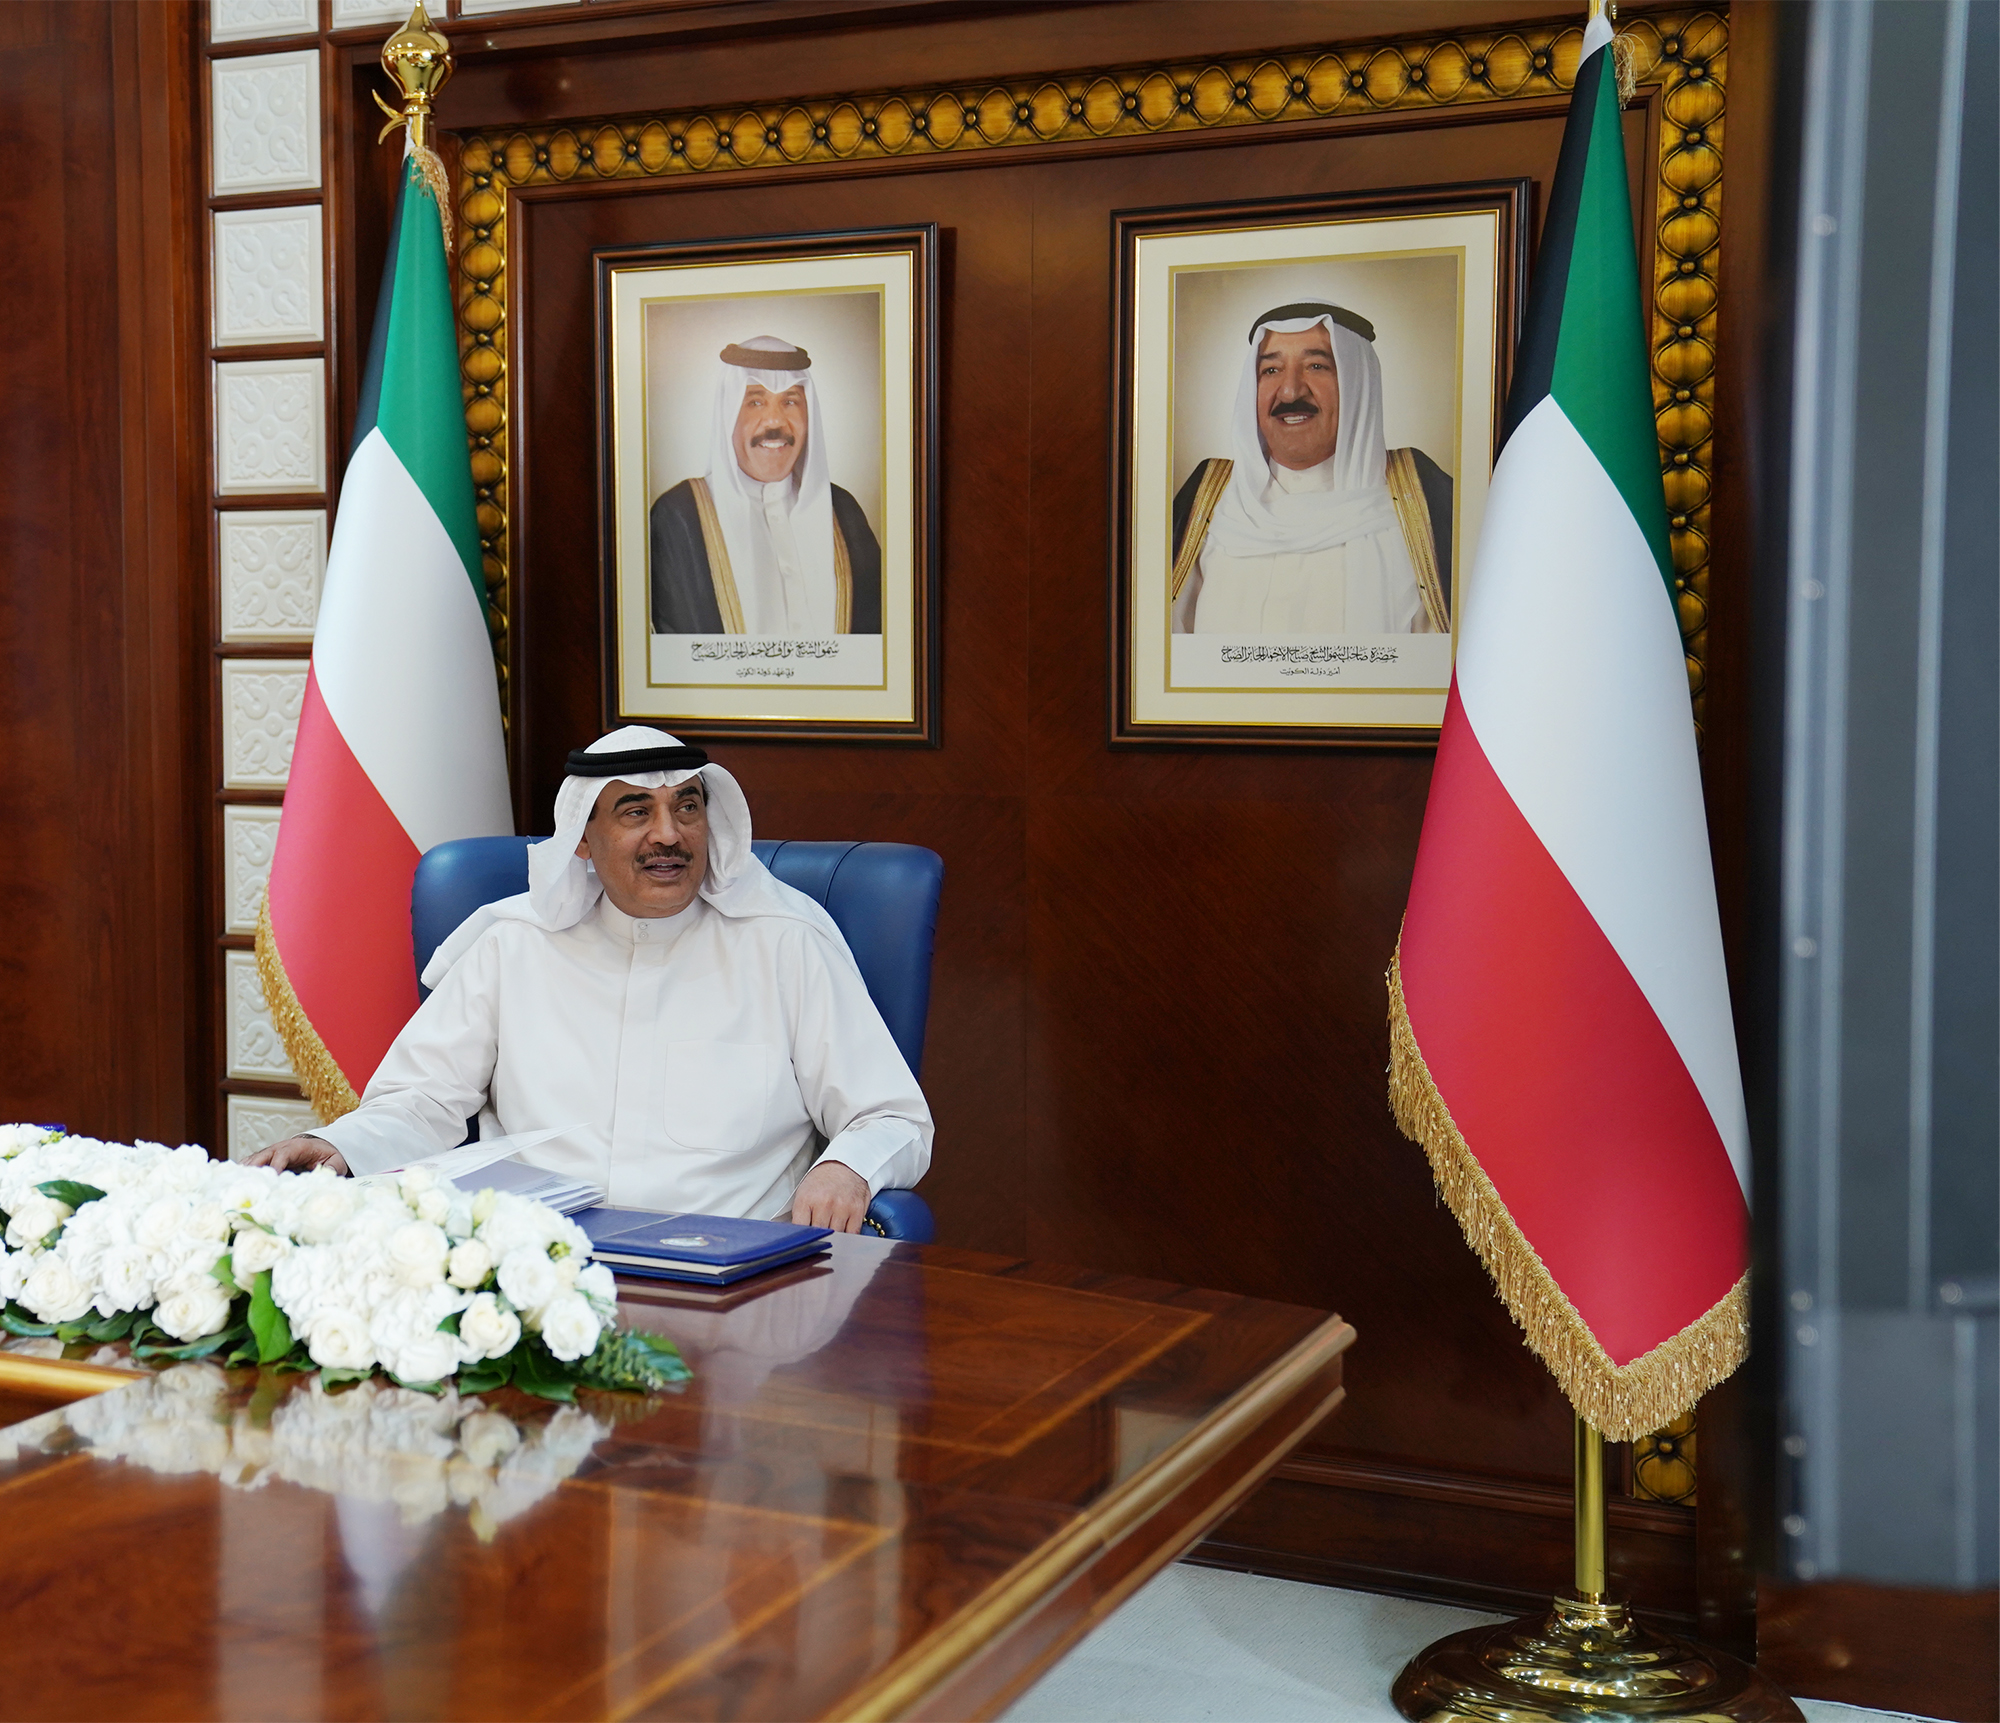 His Highness the Prime Minister Sheikh Sabah Khaled Al-Hamad Al-Sabah